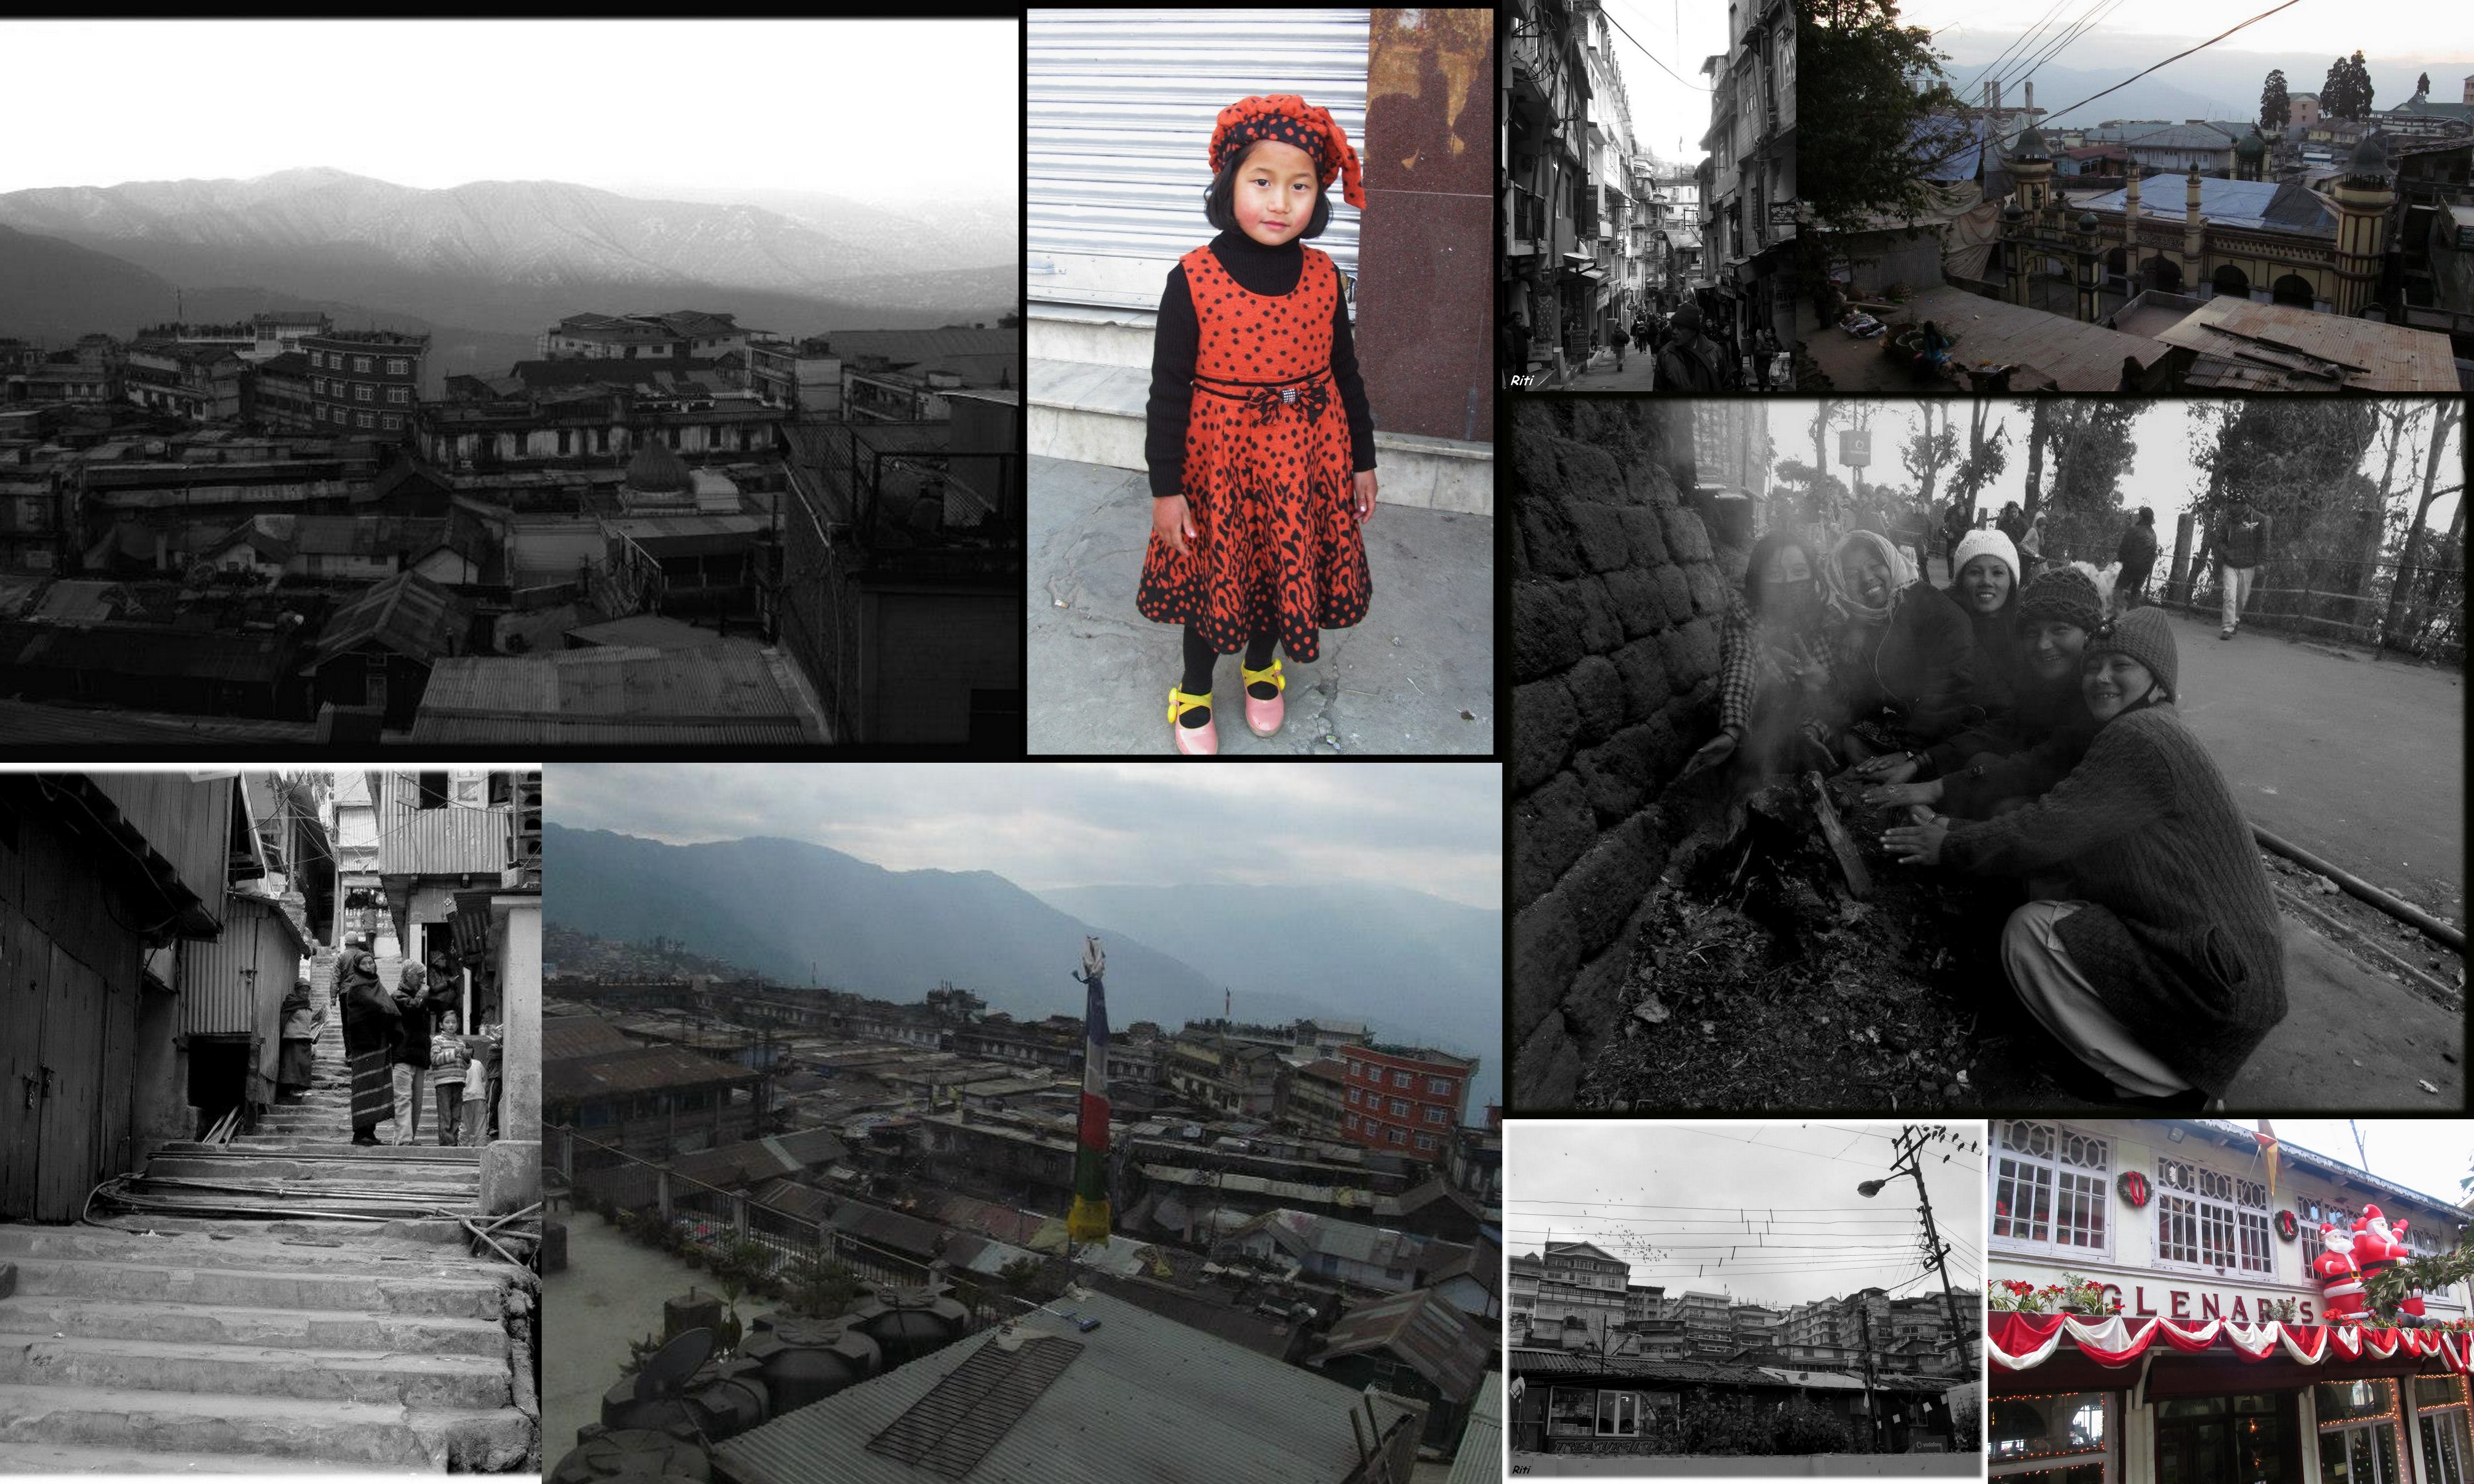 Little Paths of Darjeeling